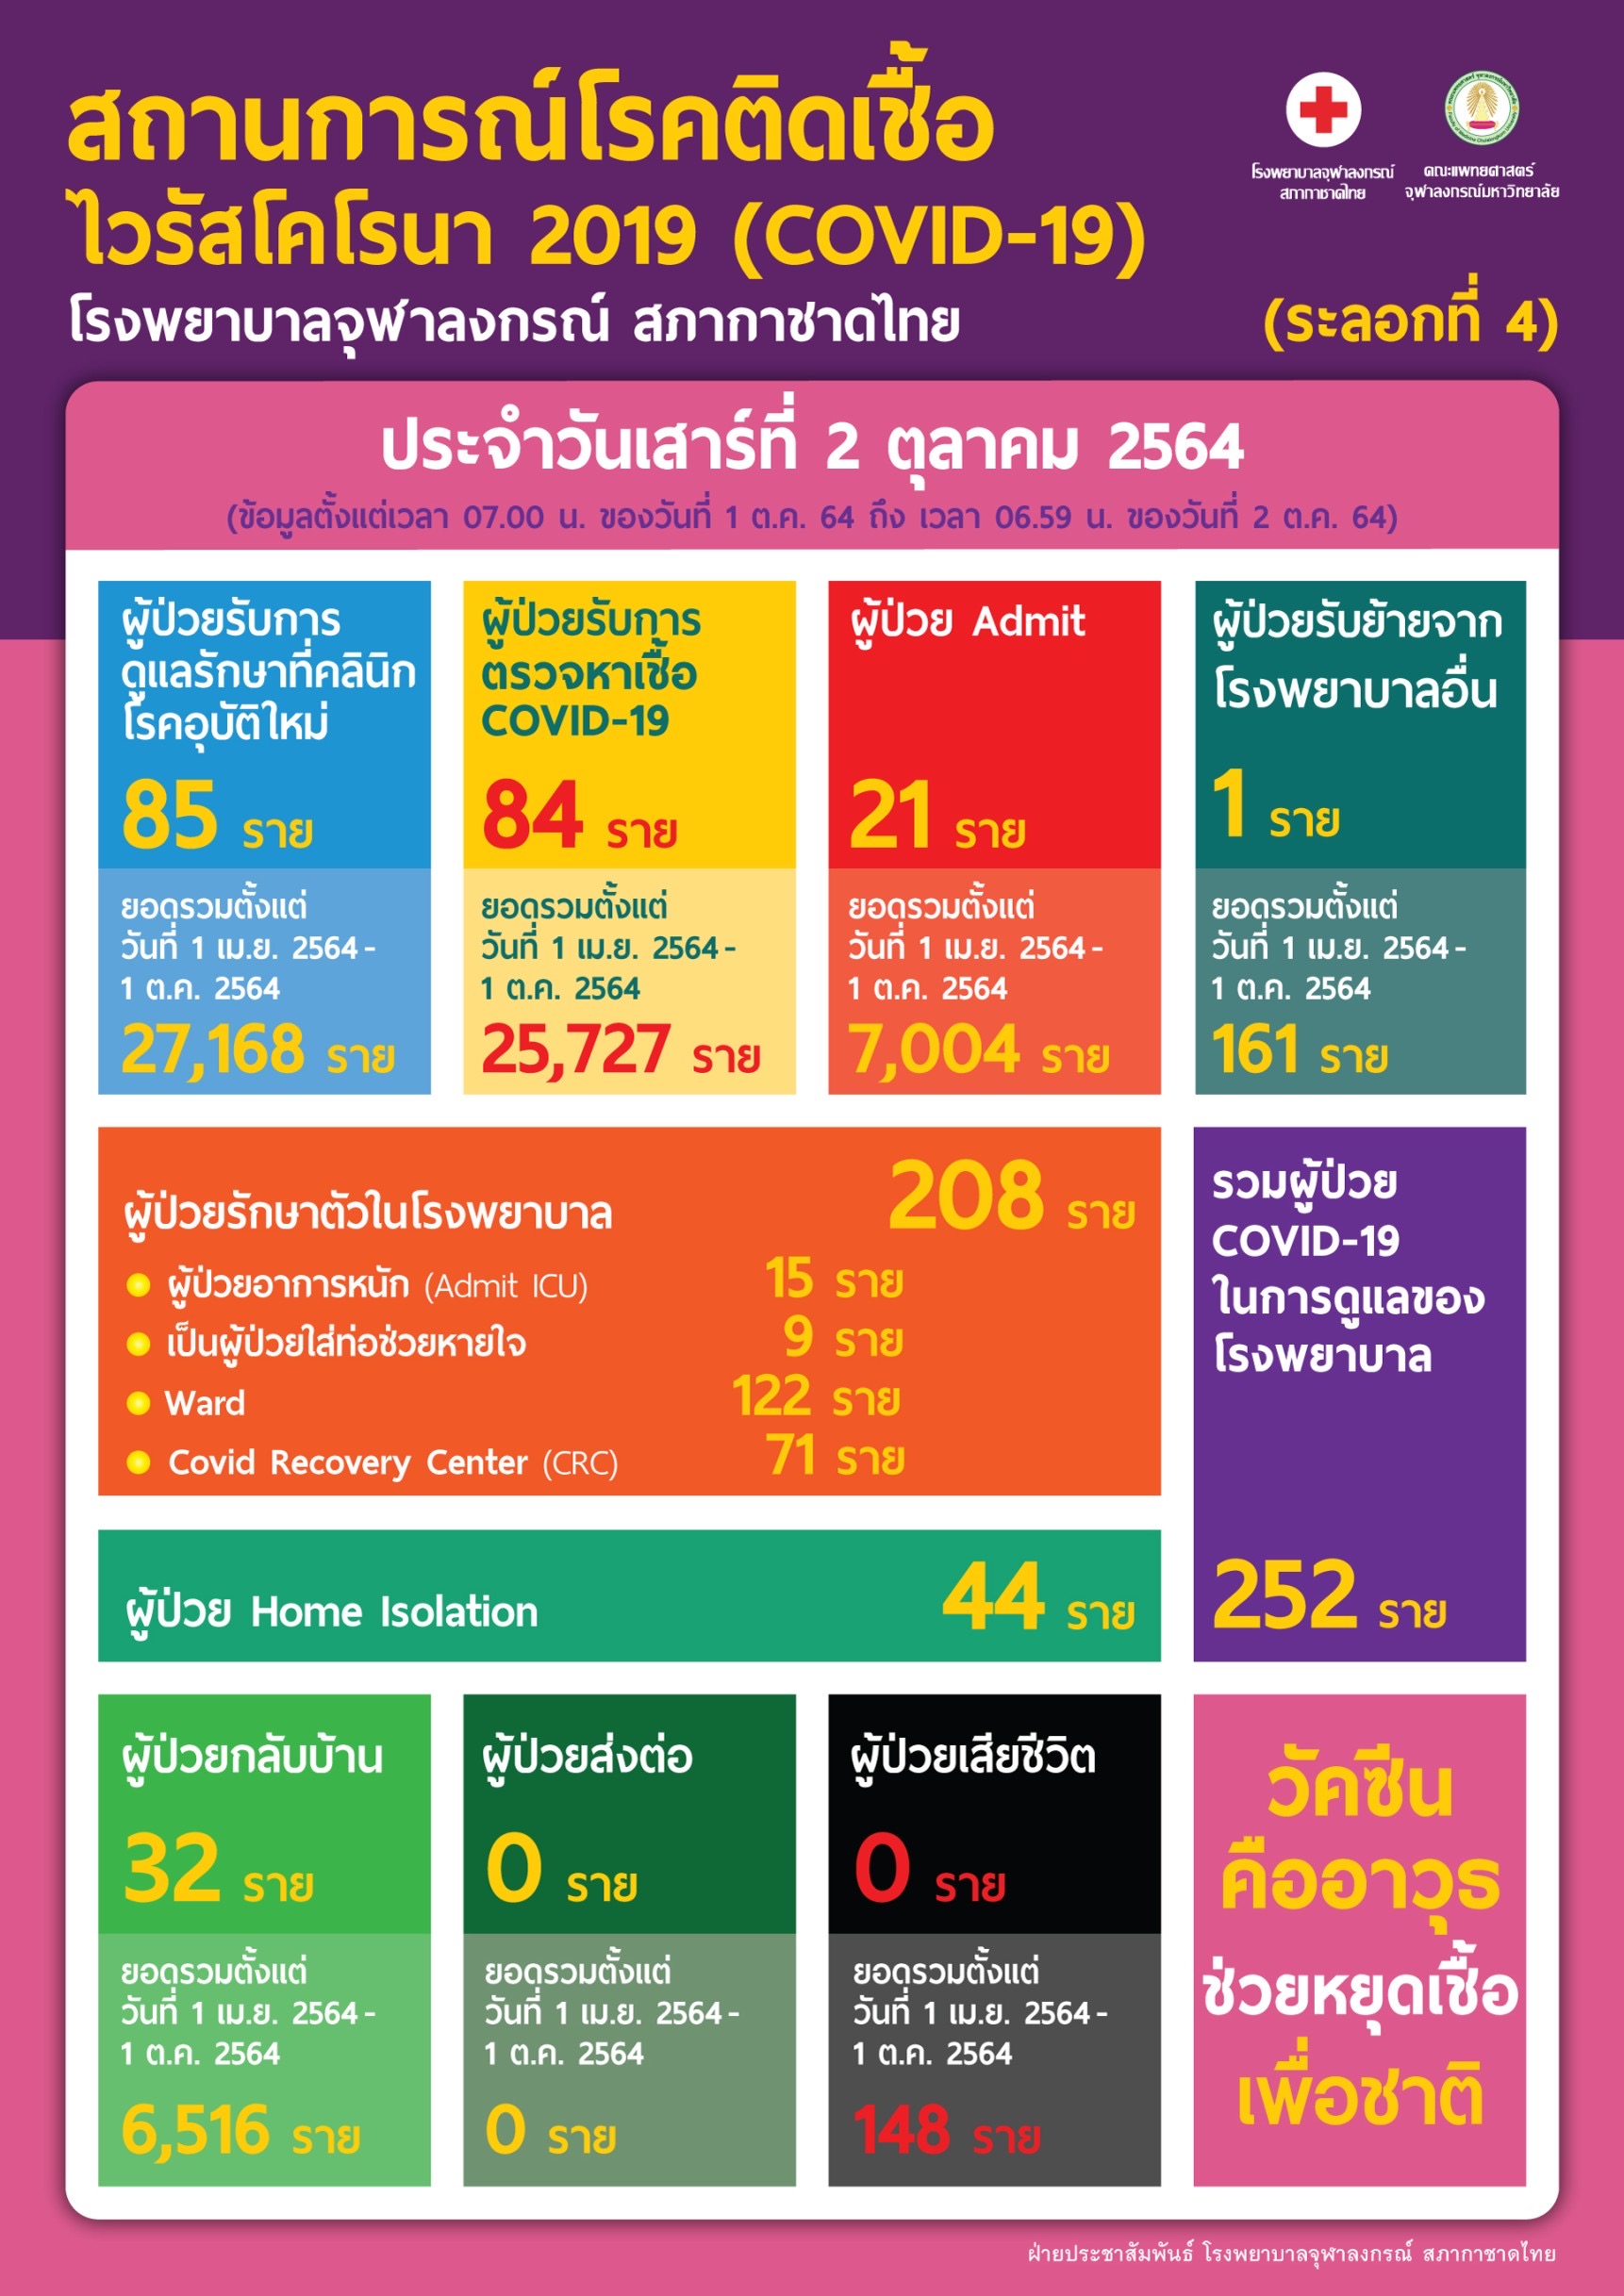 สถานการณ์โรคติดเชื้อไวรัสโคโรนา 2019 (COVID-19) (ระลอกที่ 4) โรงพยาบาลจุฬาลงกรณ์ สภากาชาดไทย ประจำวันเสาร์ที่ 2 ตุลาคม 2564